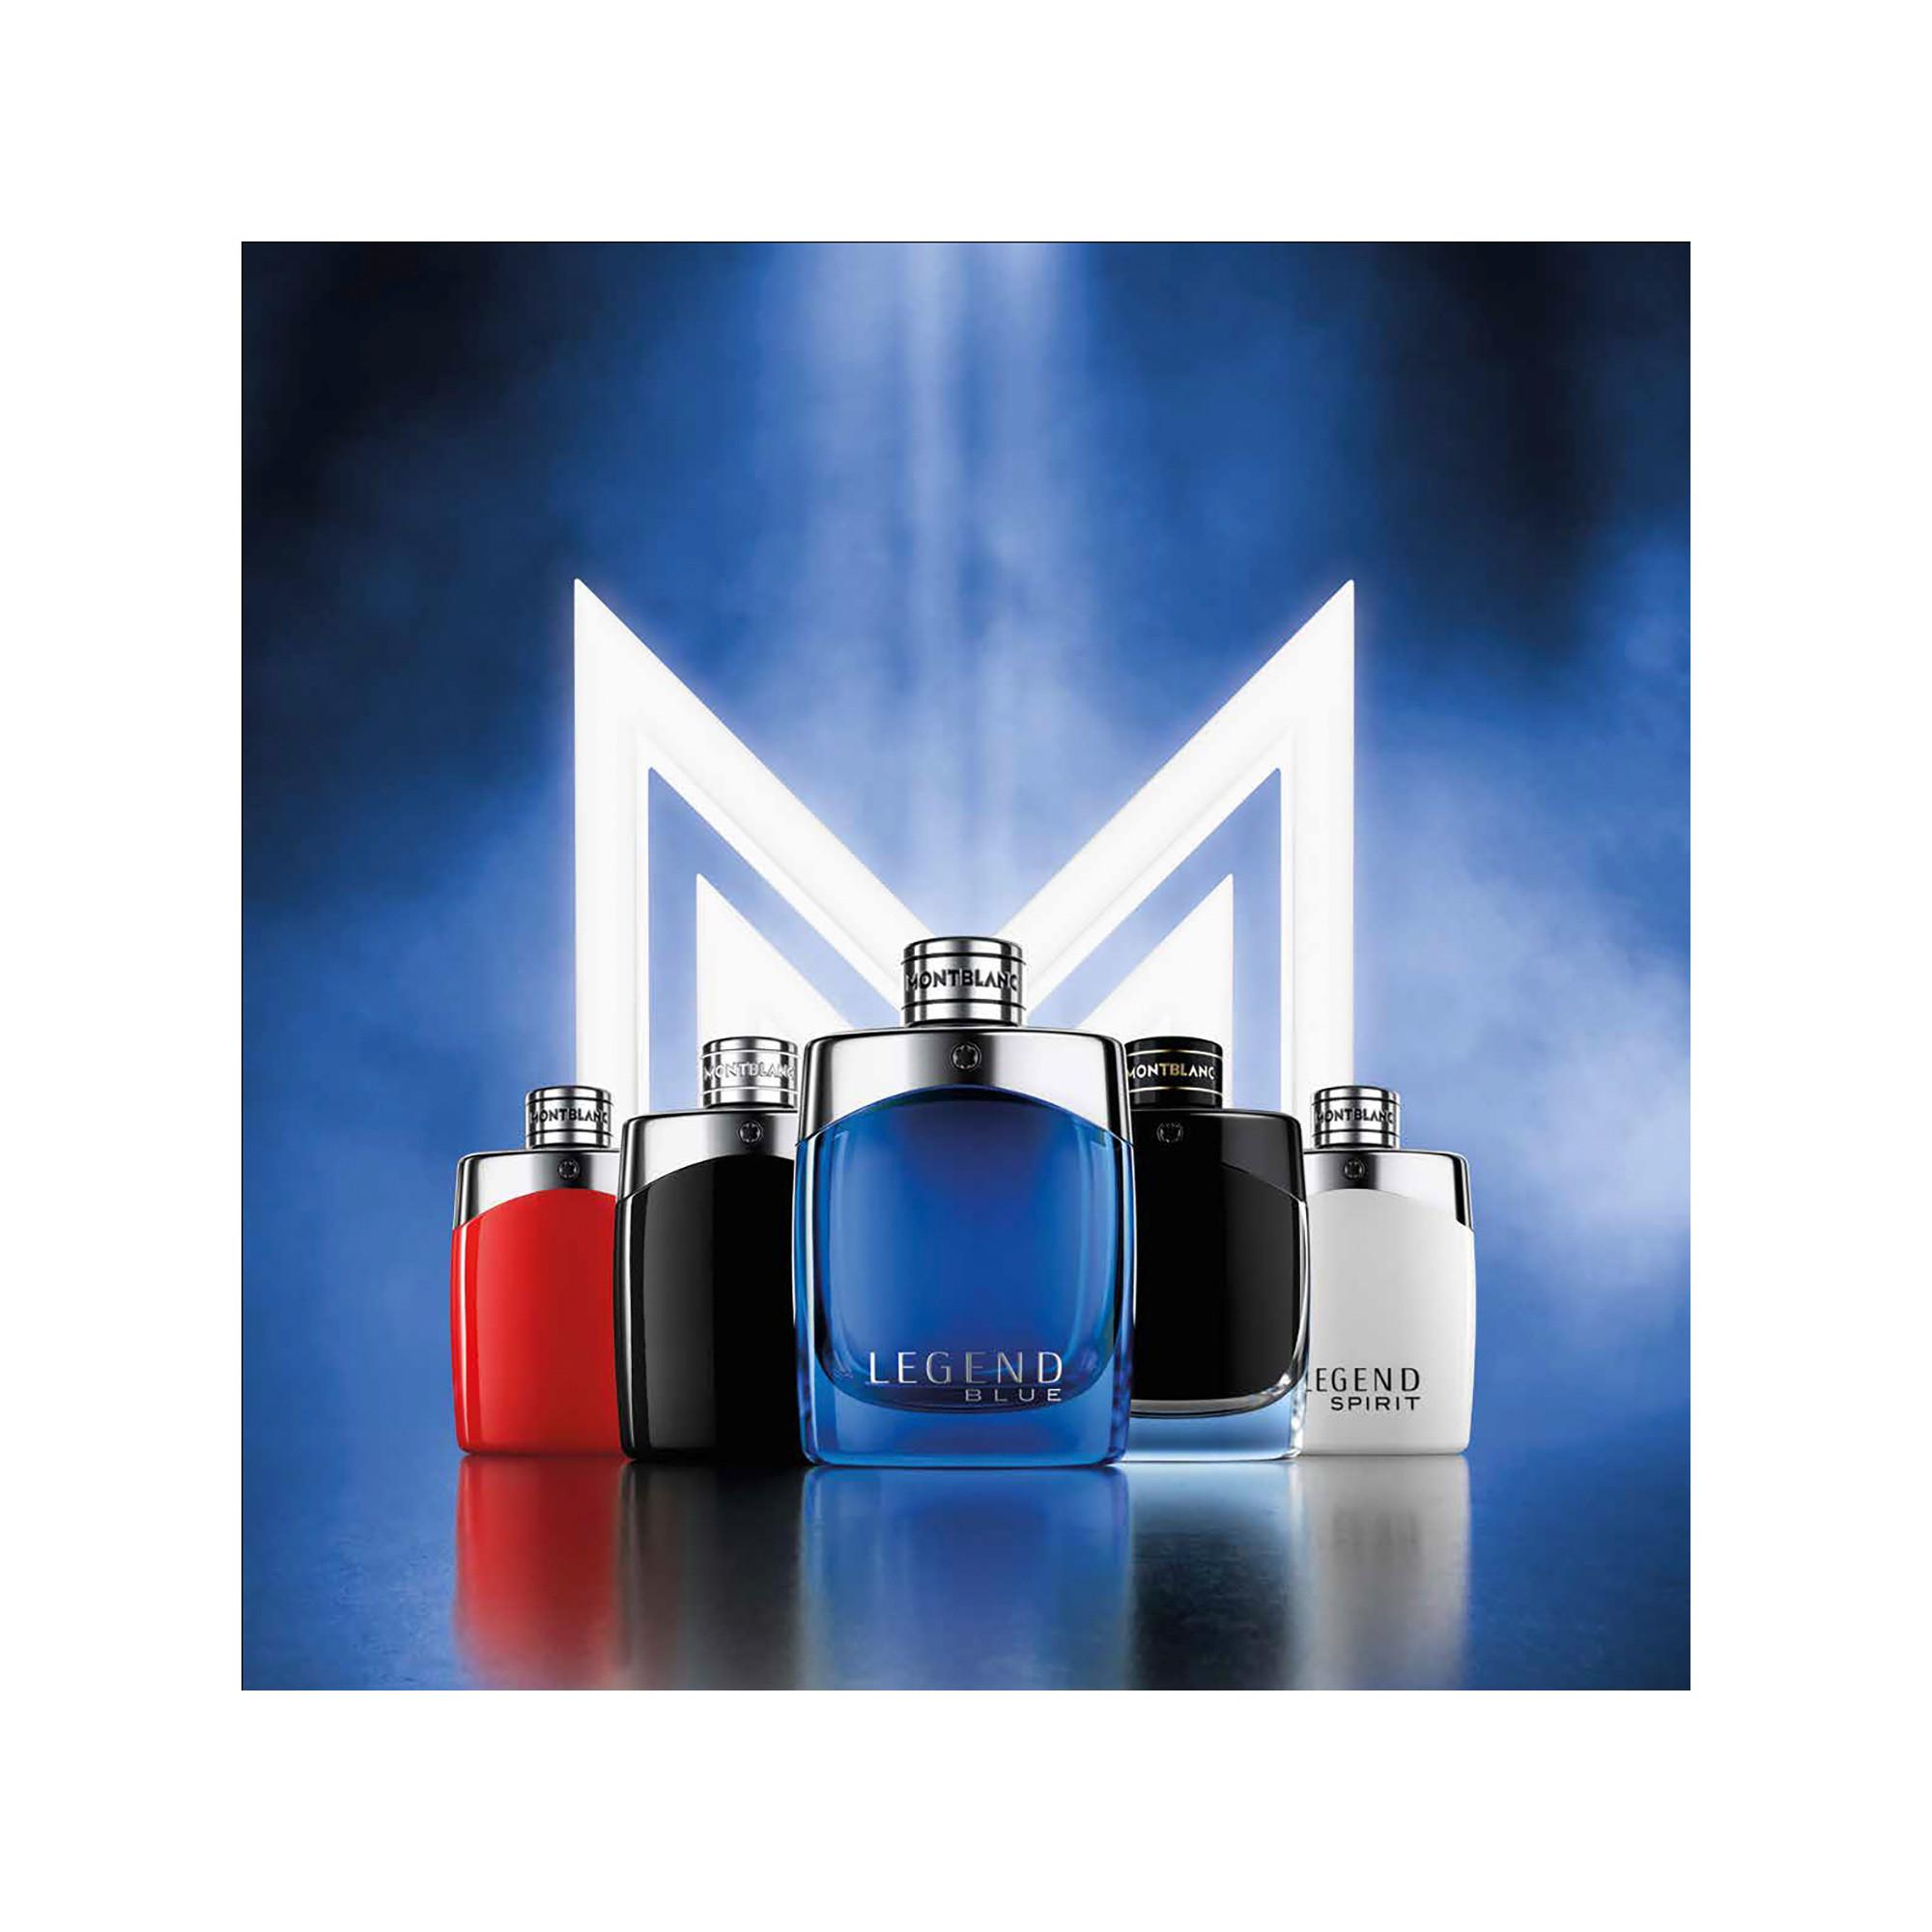 MONTBLANC Legend Red Eau De Parfum 